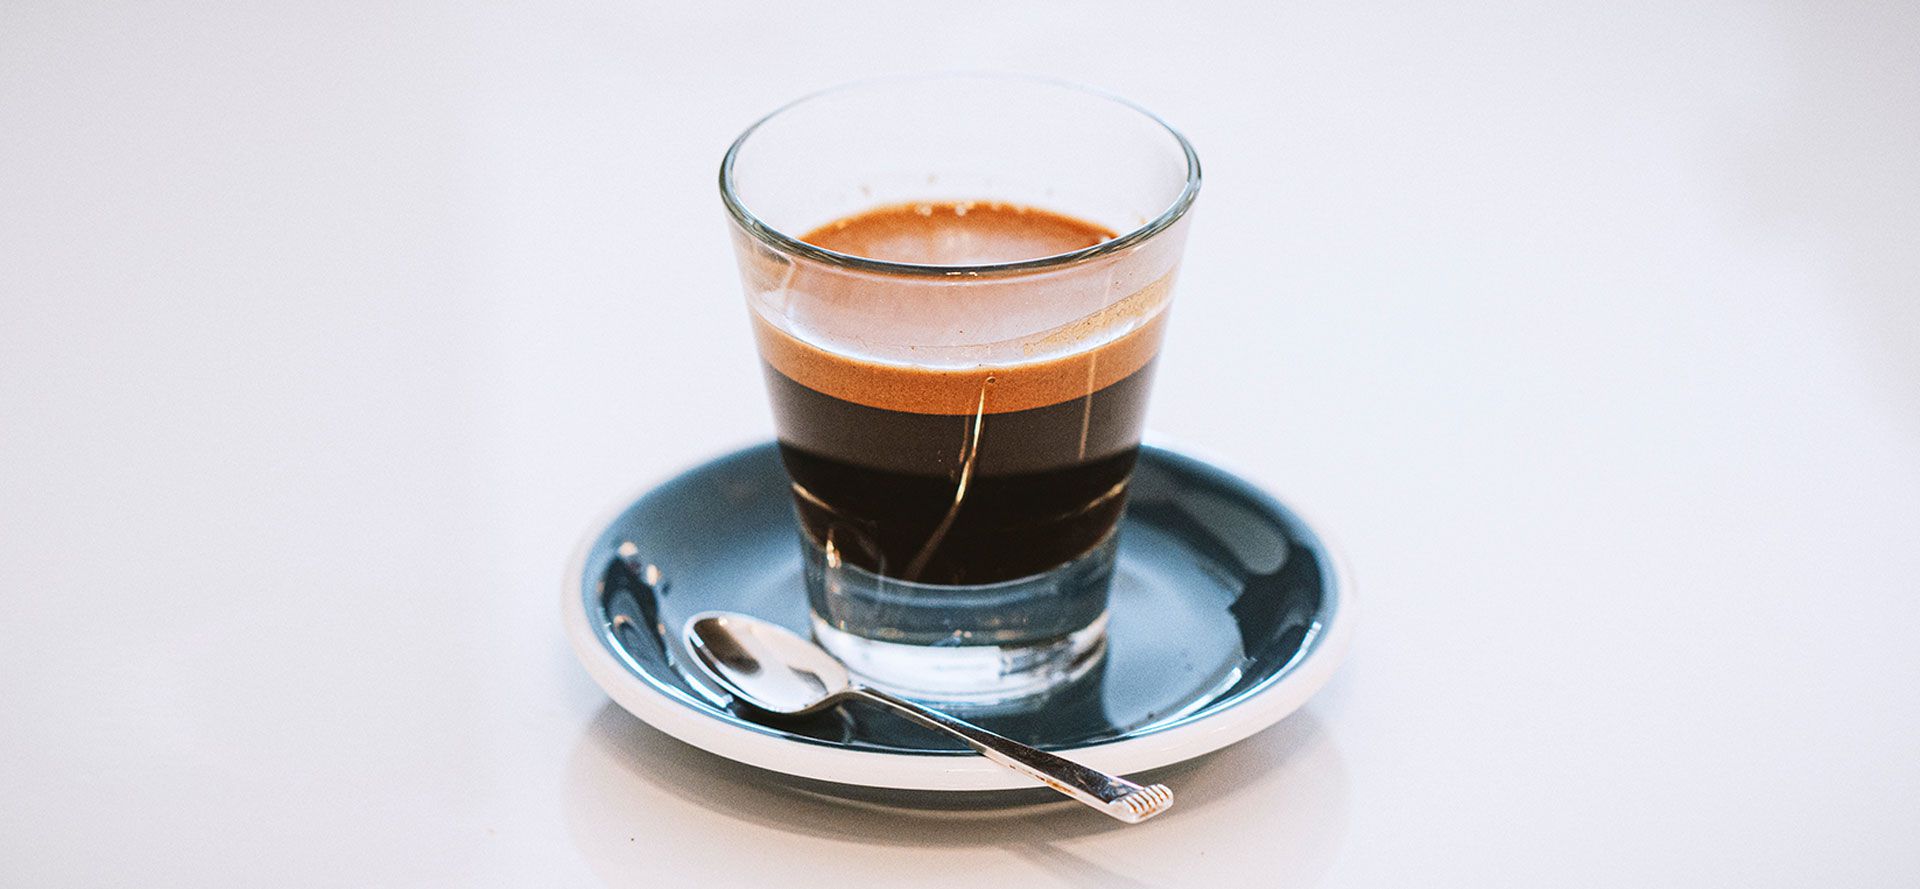 Espresso In The Glass Cup.